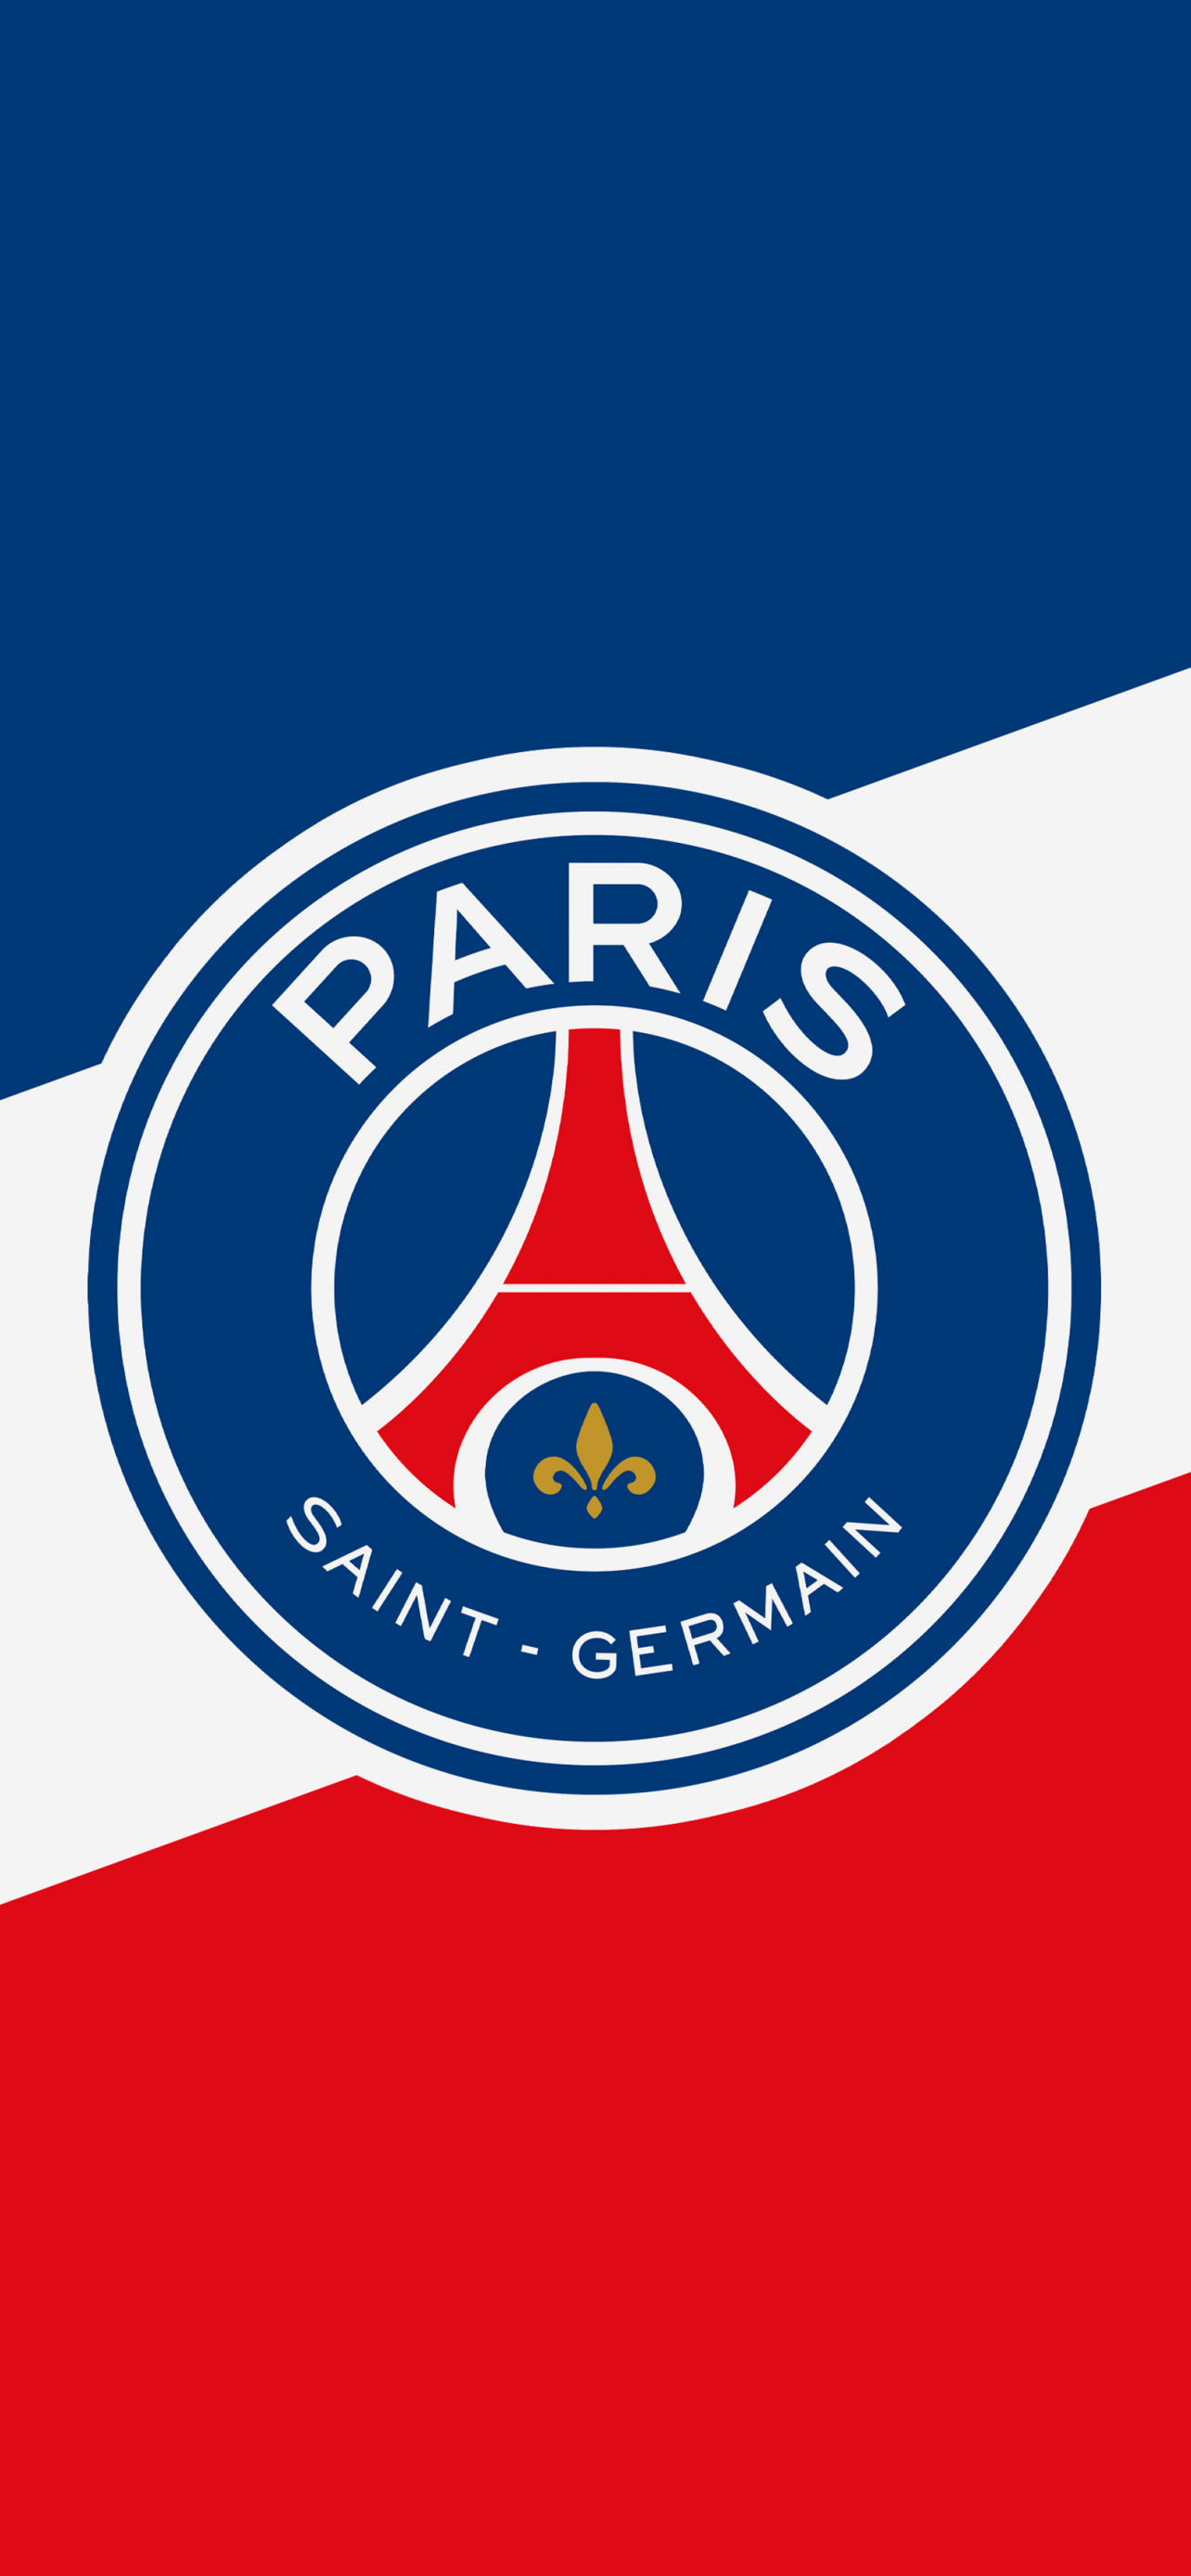 Paris SaintGermain FC Wallpaper 4K, Football club, 5K